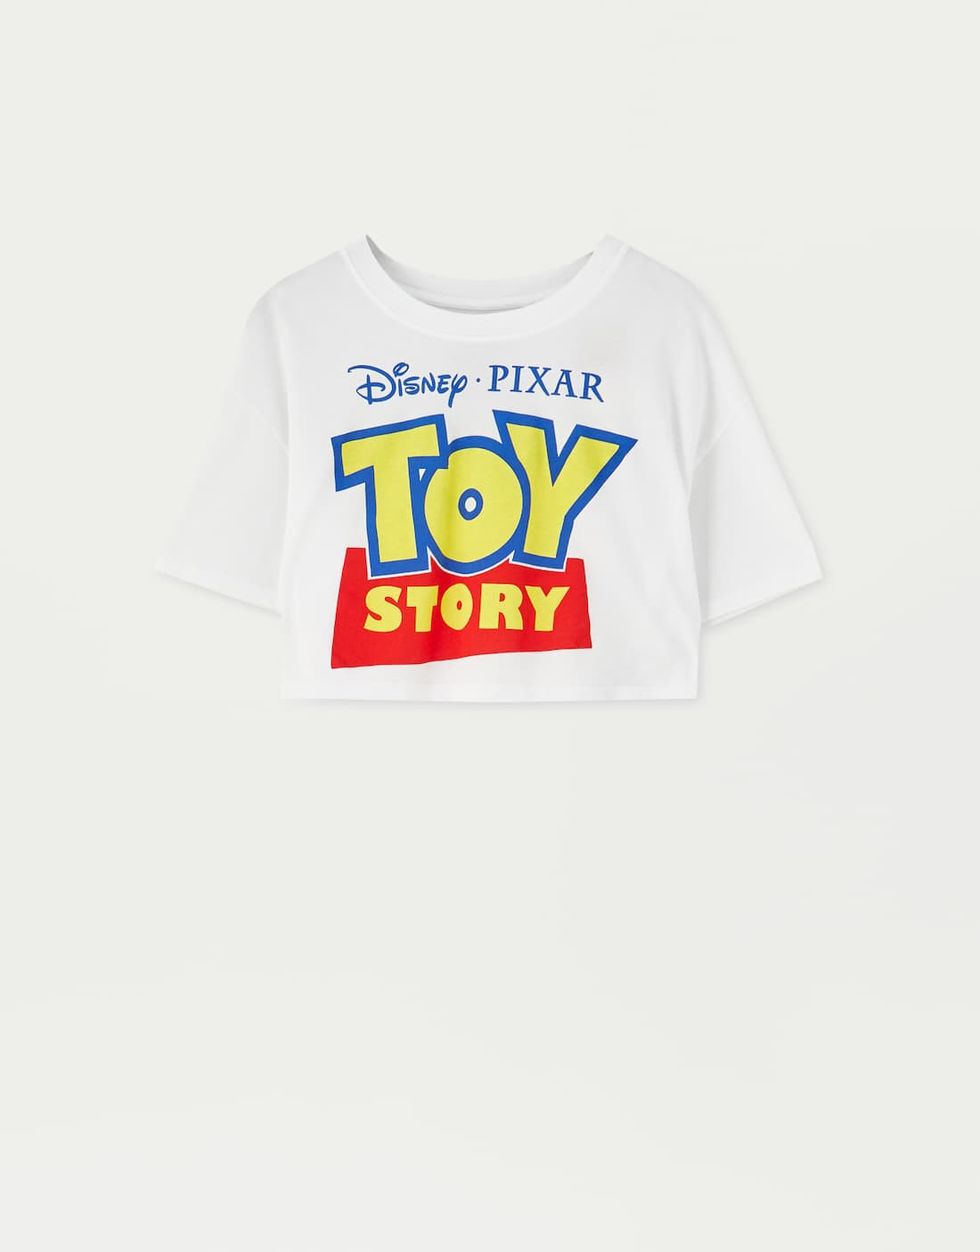 Pull and Bear lanza las camisetas 'Toy Story' que vas a desear